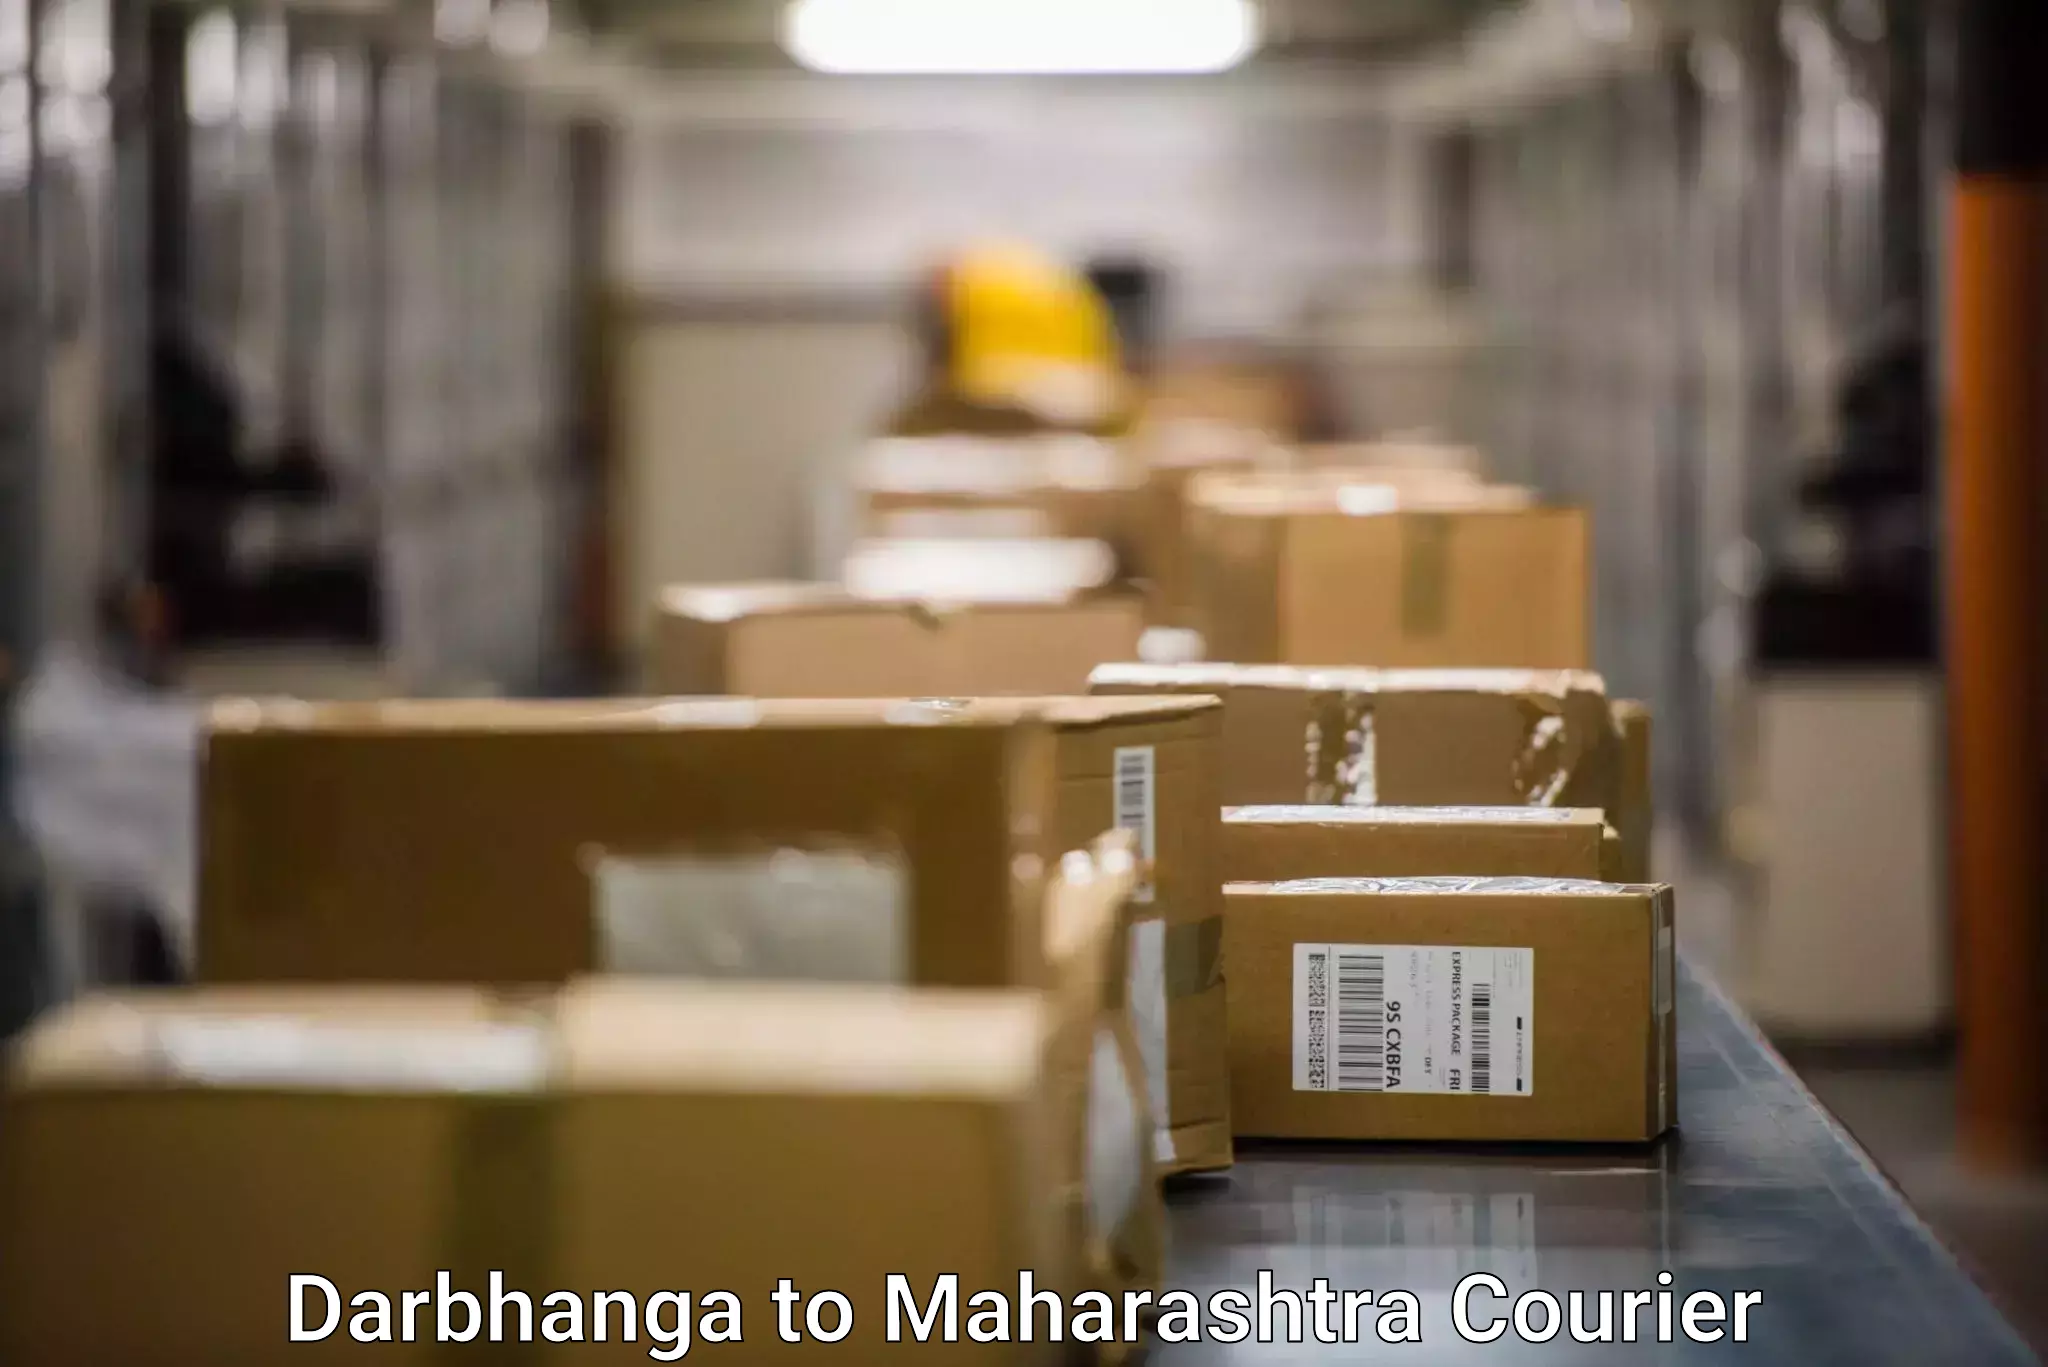 Courier service booking Darbhanga to Shivajinagar